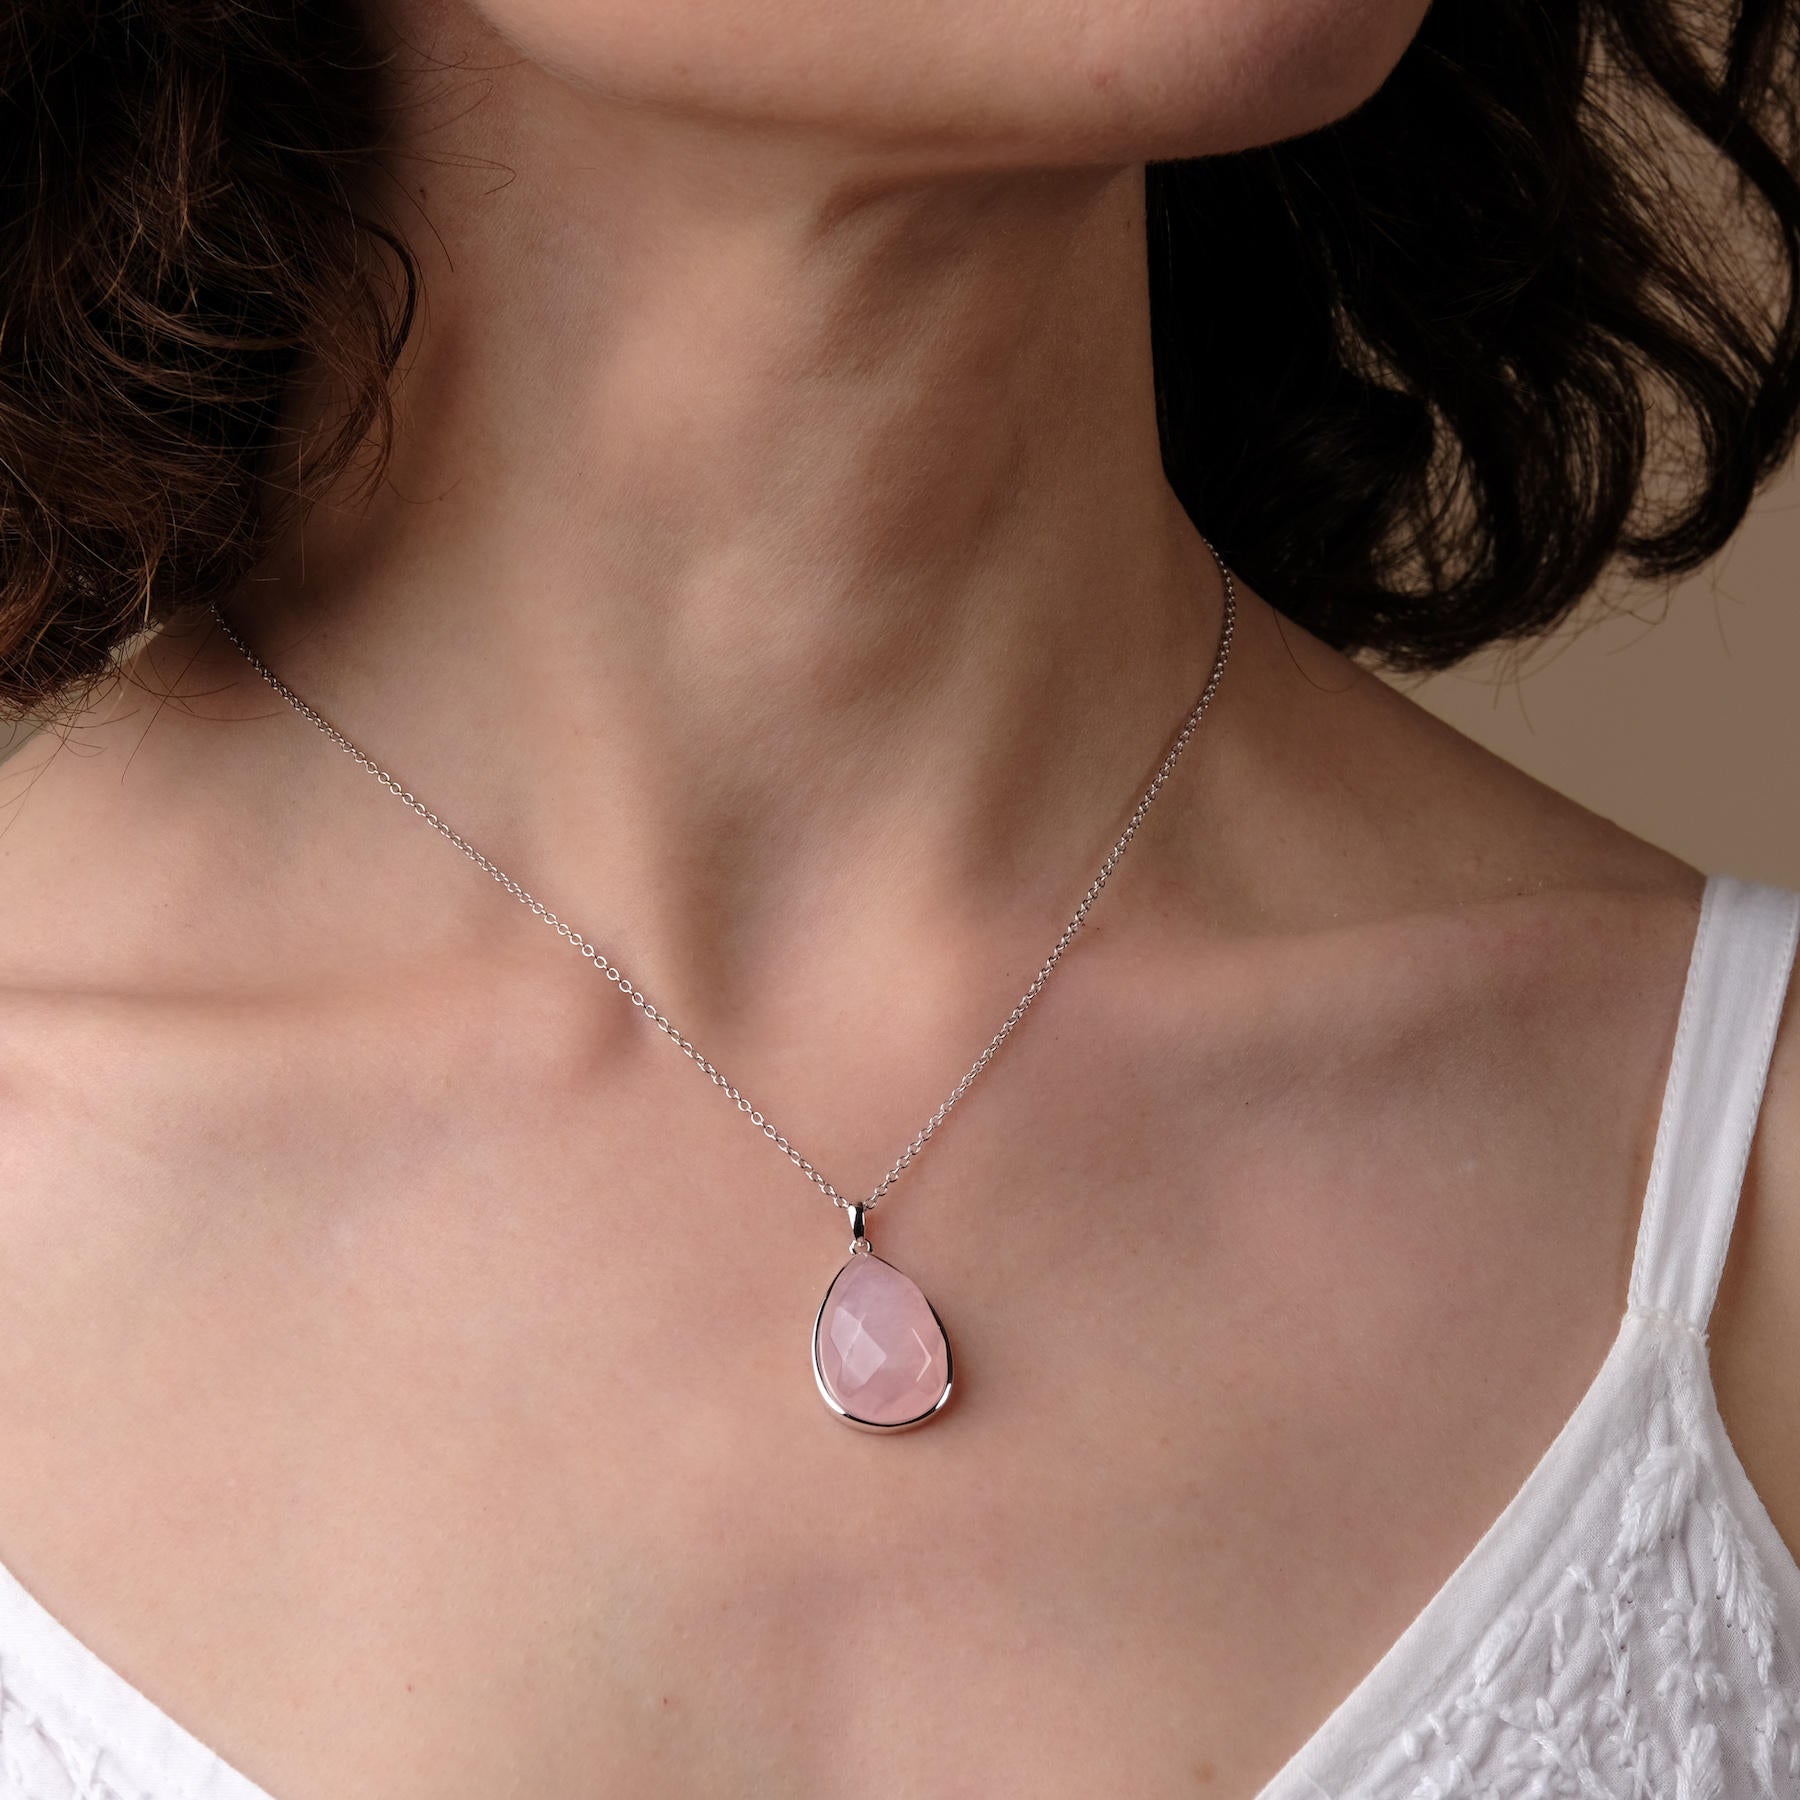 Collier de Yoga avec pendentif de quartz rose à facettes argenté